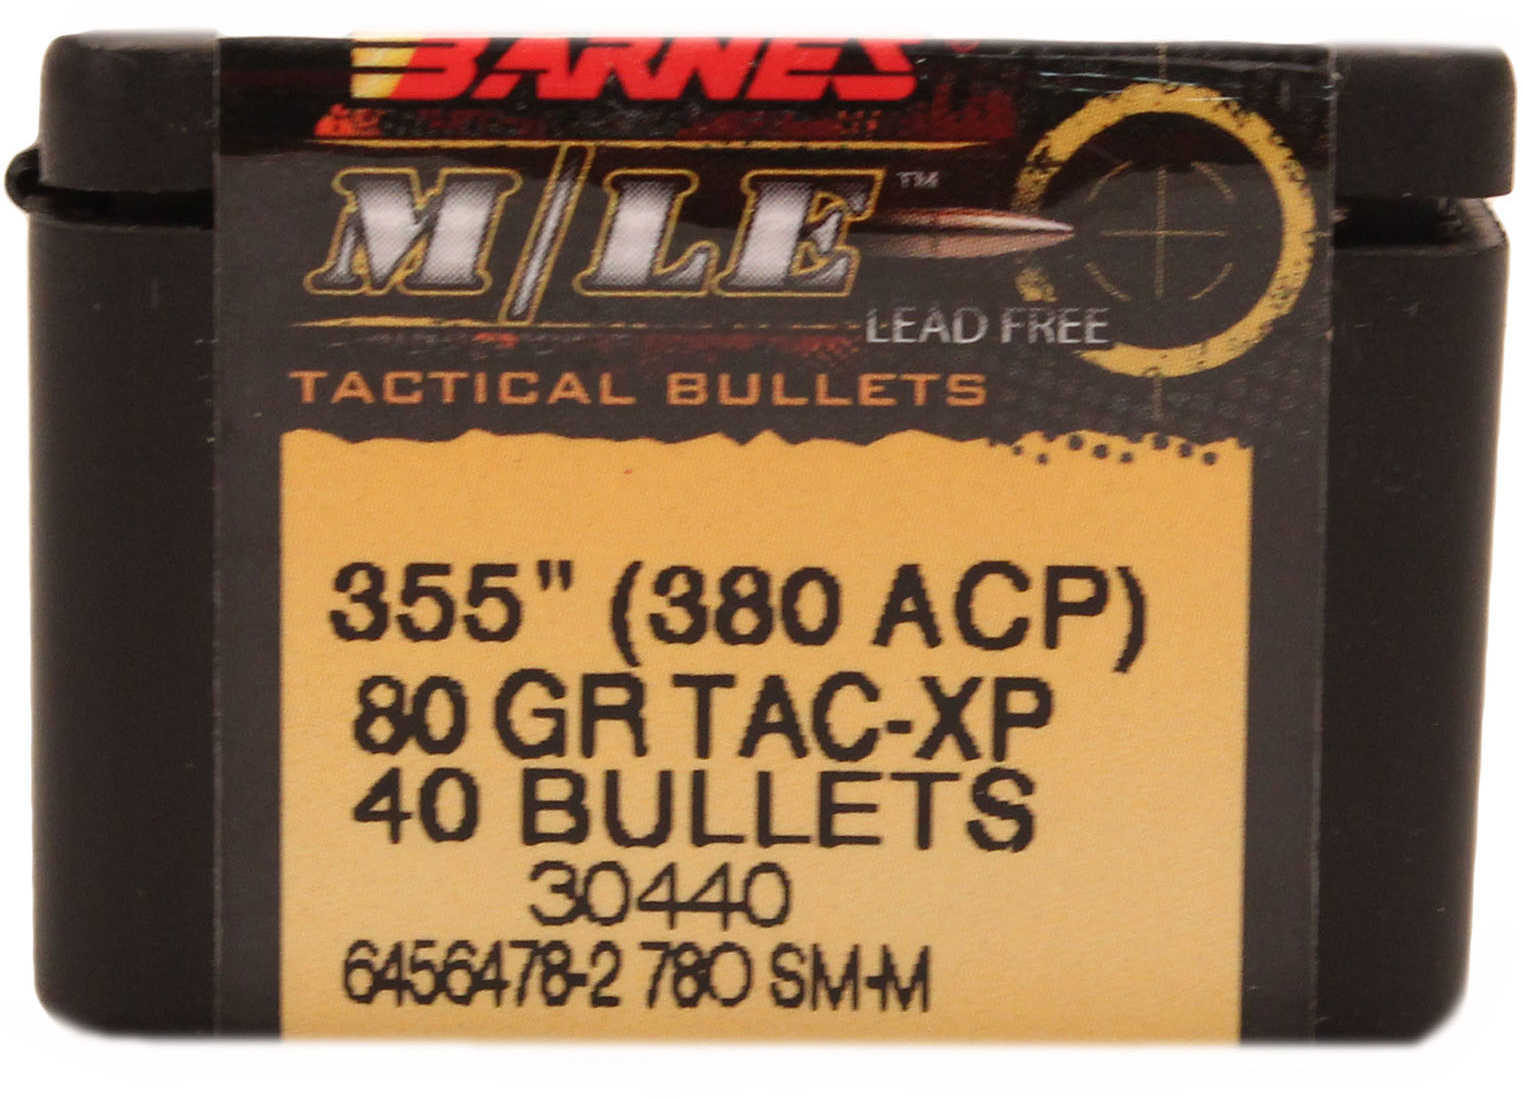 Barnes 380 ACP .355 Diameter 80 Grain Tactical Pistol X Bullet 40 Per Box Md: 35500